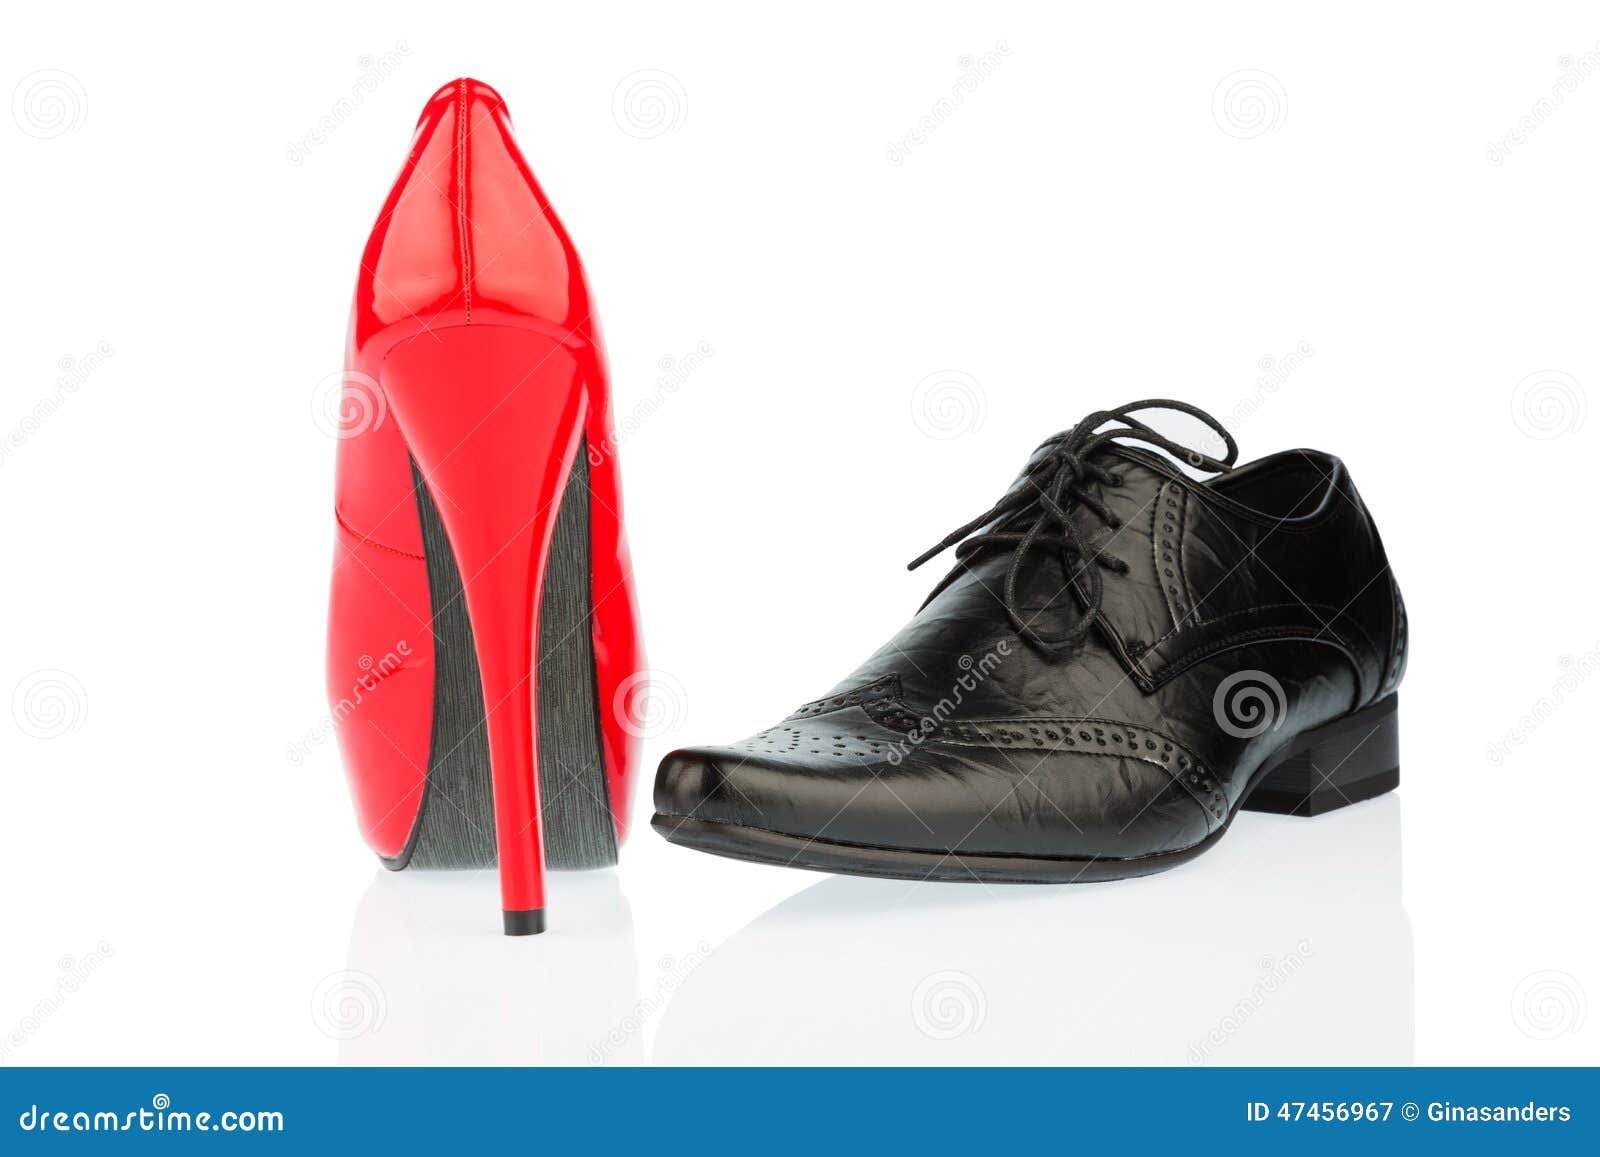 high heels for men | Men in heels, Men wearing high heels, Men high heels-totobed.com.vn